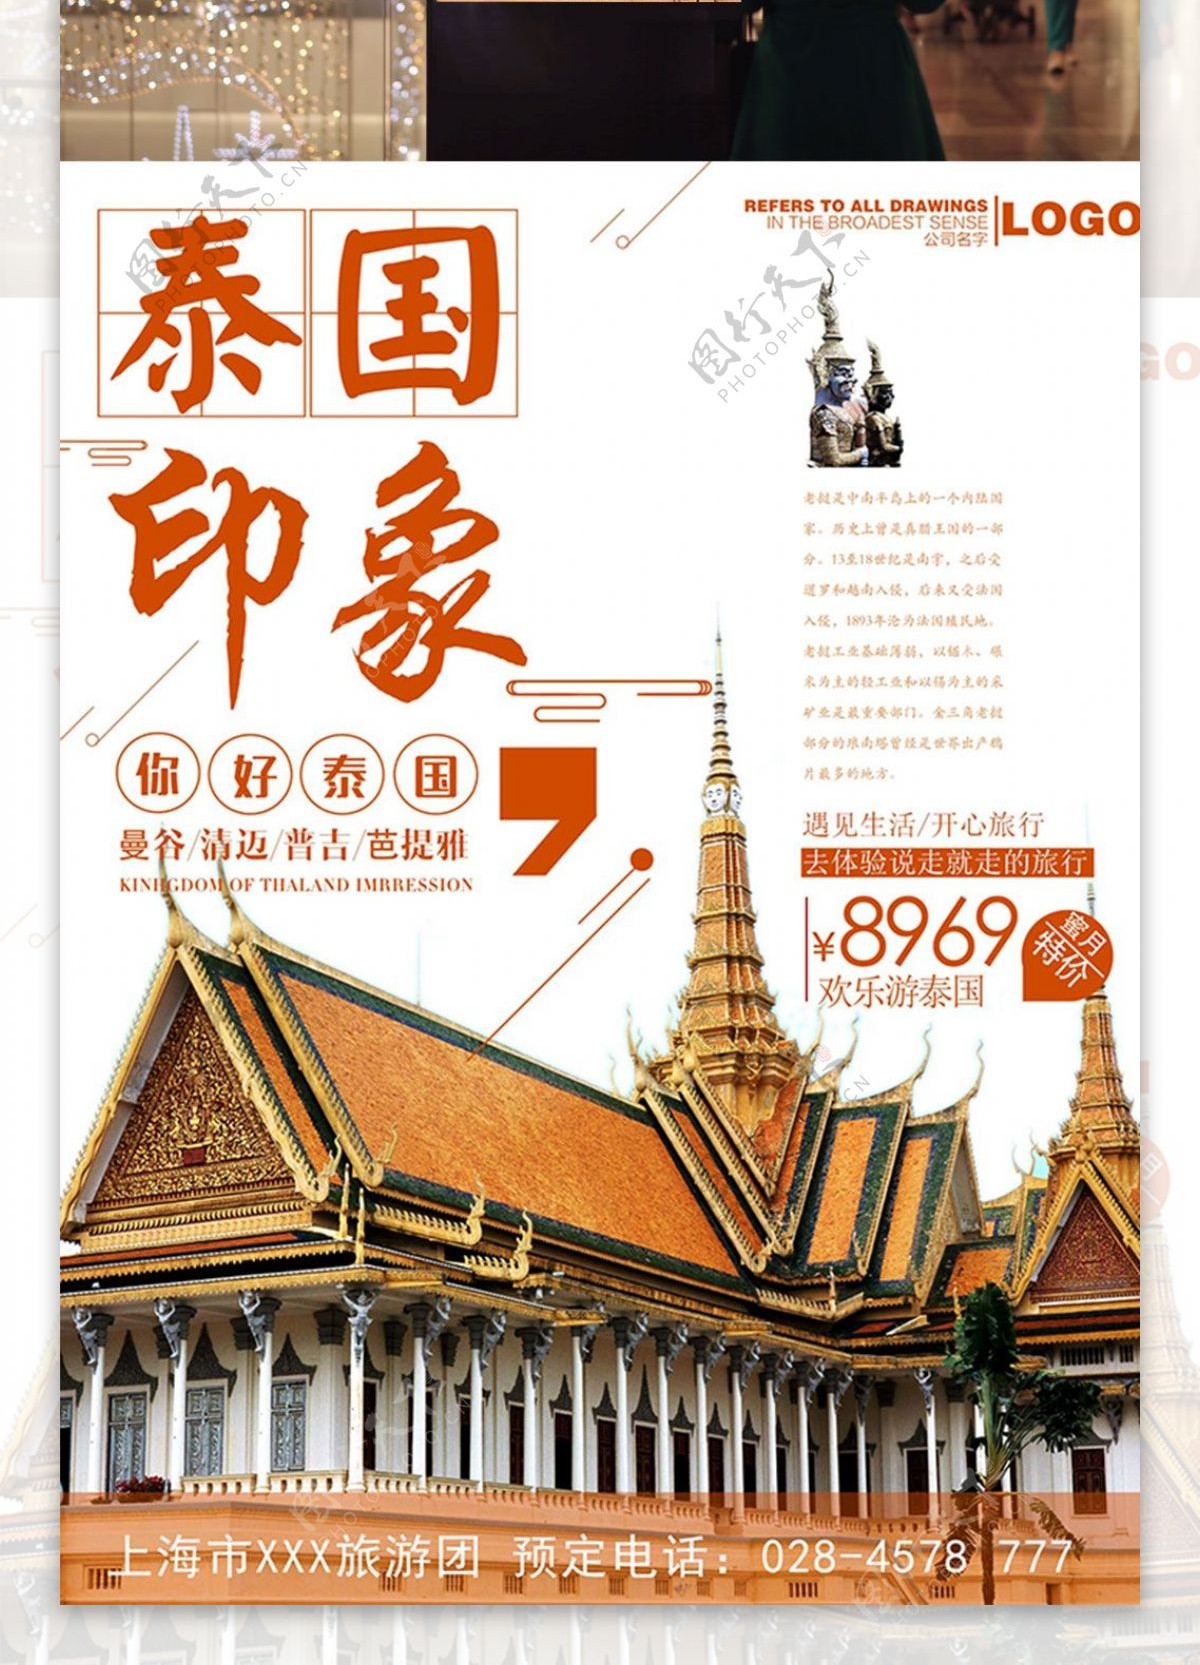 夏日泰国旅游橘色建筑简约商业海报设计